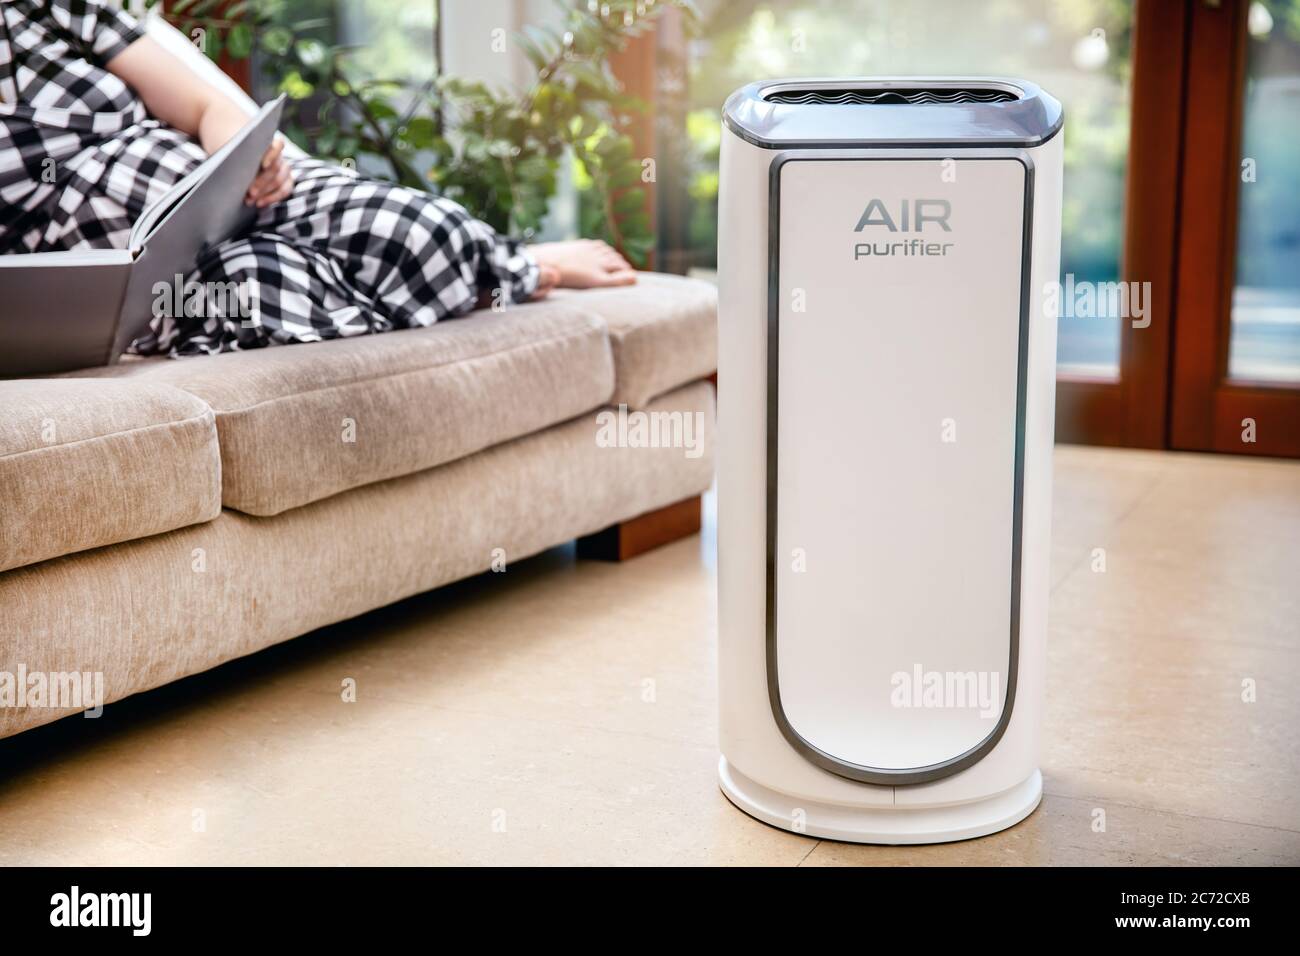 Luftreiniger reinigt die Luft. Moderner Luftreiniger reinigt die Luft im Wohnzimmer mit Frau auf der Couch liegen. Logo auf dem Gerät wurde in erstellt Stockfoto